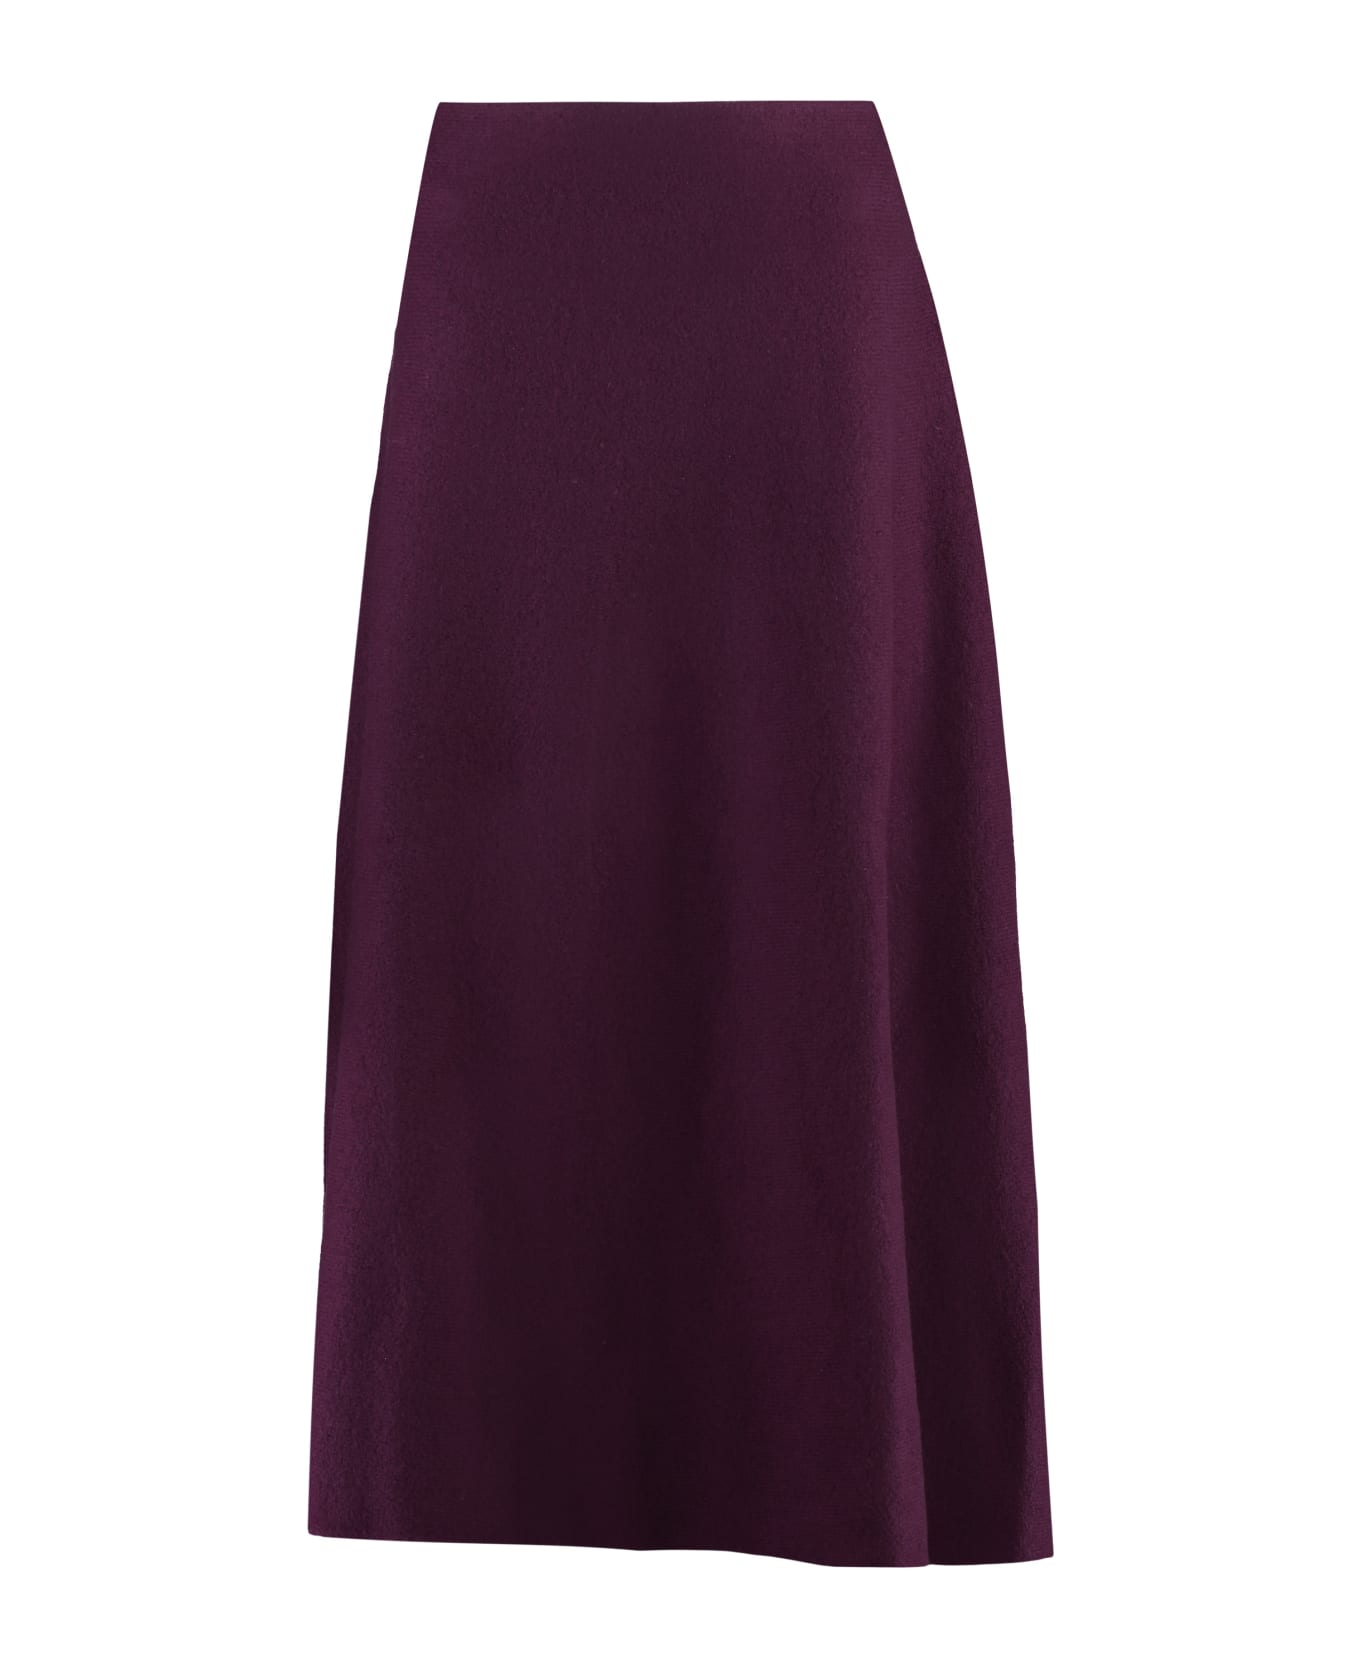 Jil Sander Wool Skirt - Red-purple or grape